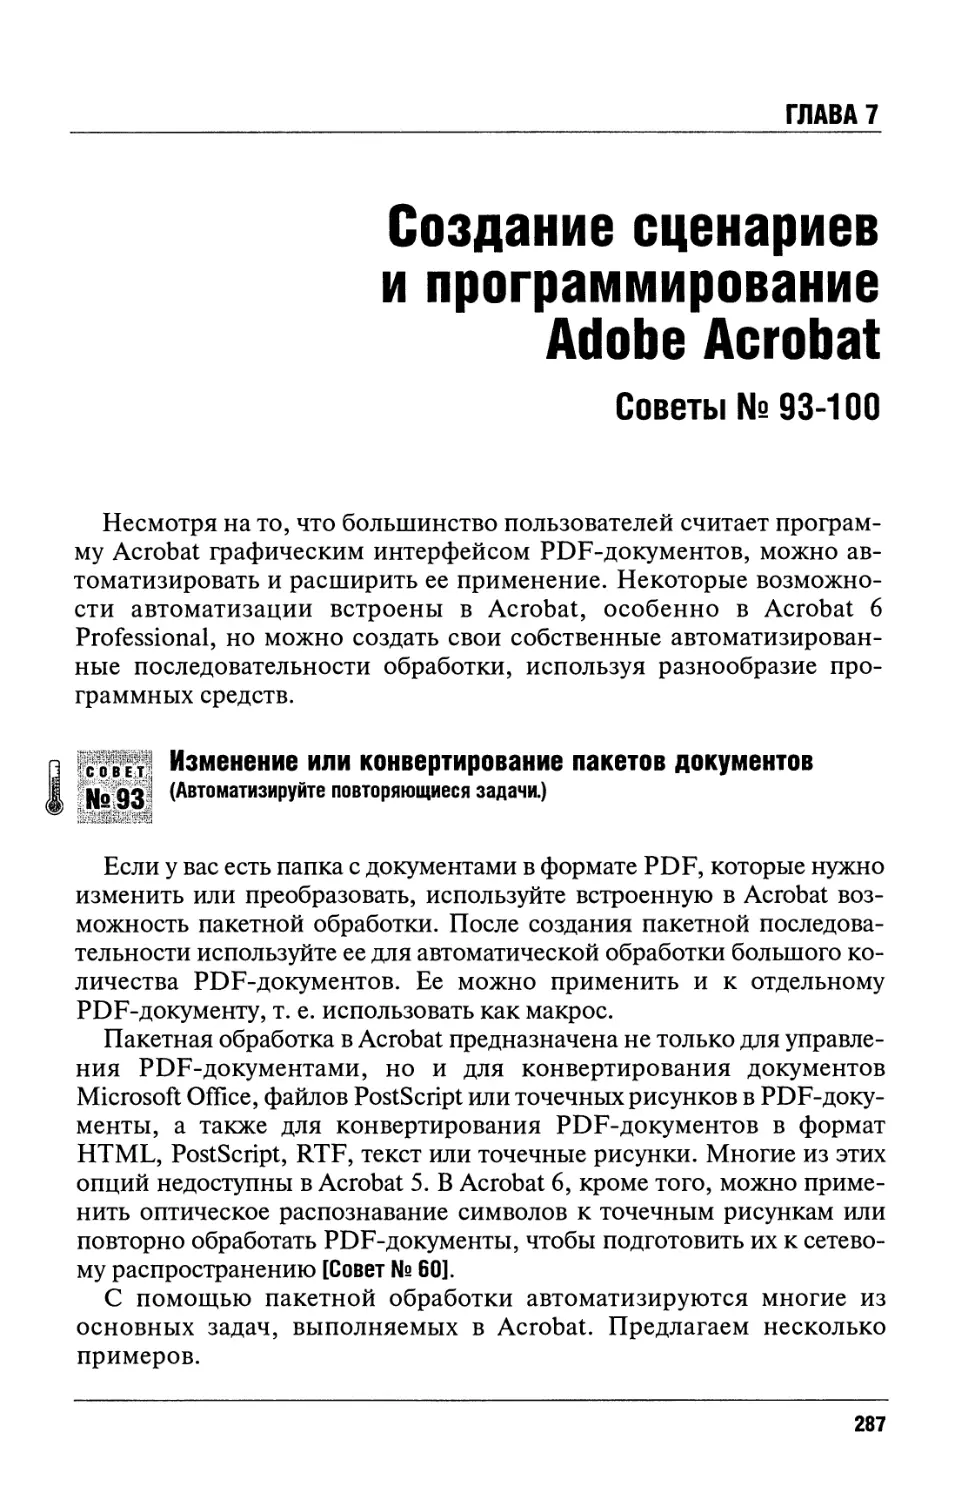 Глава 7. Создание сценариев и программирование Adobe Acrobat